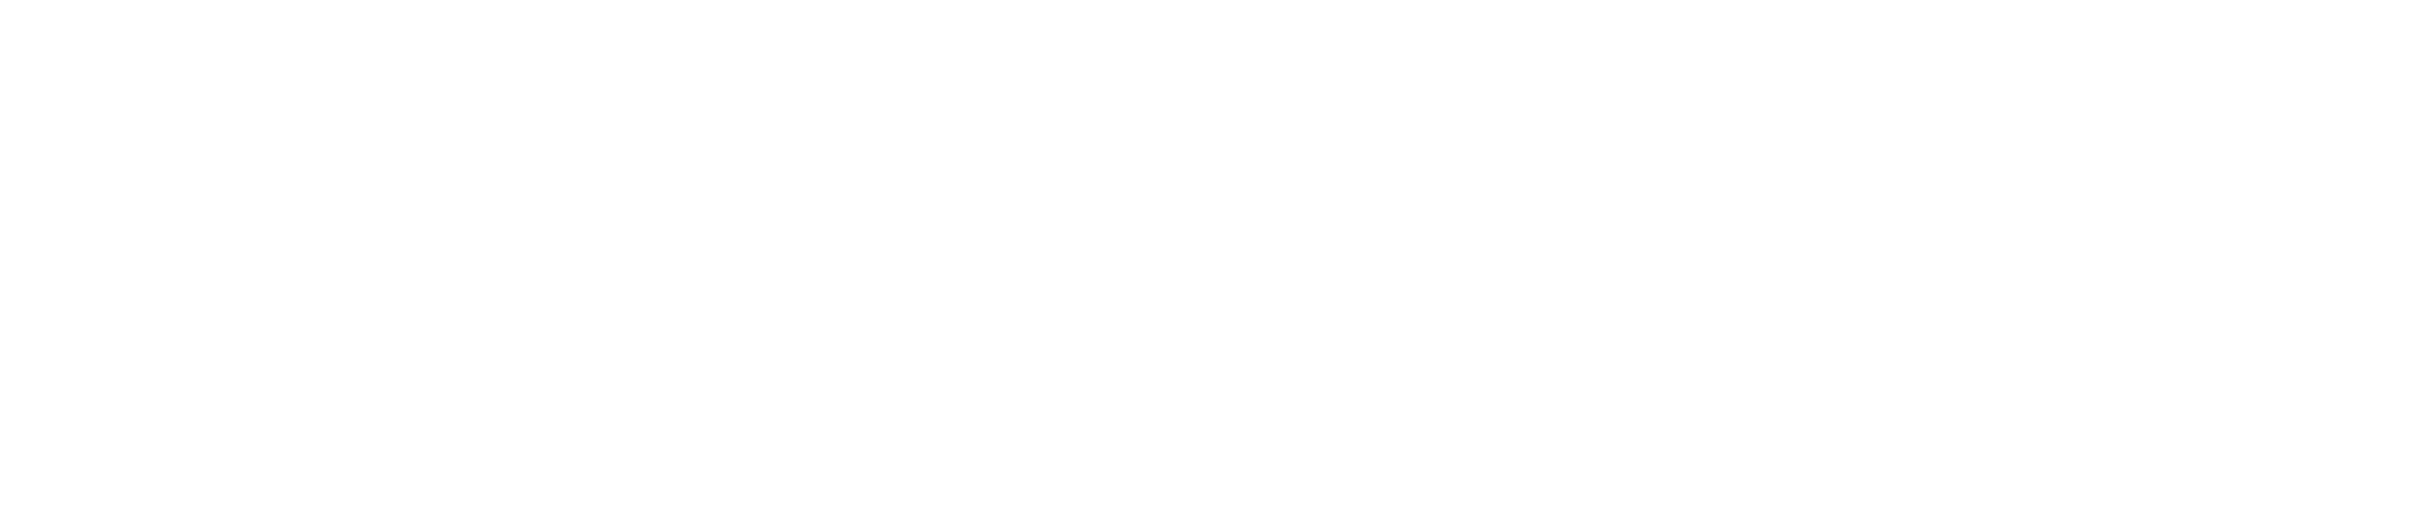 Tablet Hotels Logo